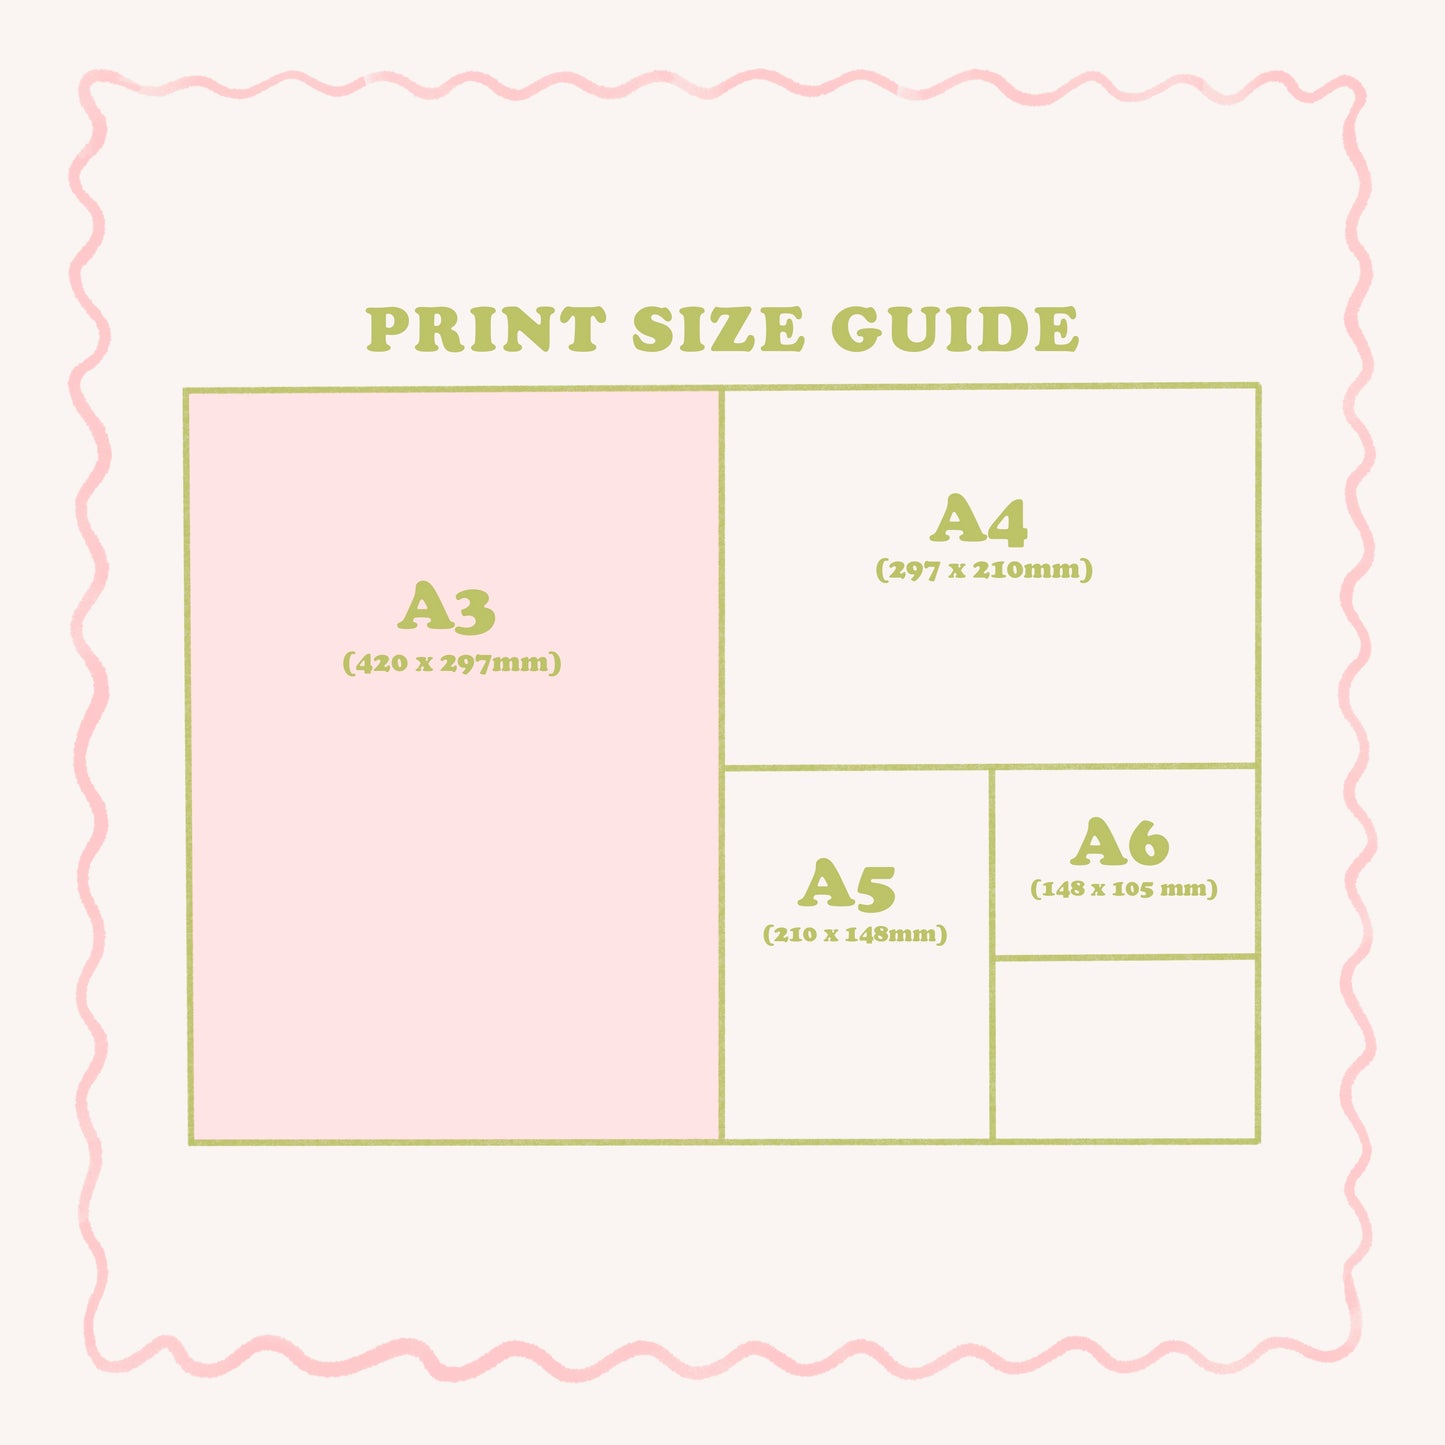 A3 Print Bundle, Choose Any 3 Prints, Mix & Match Prints